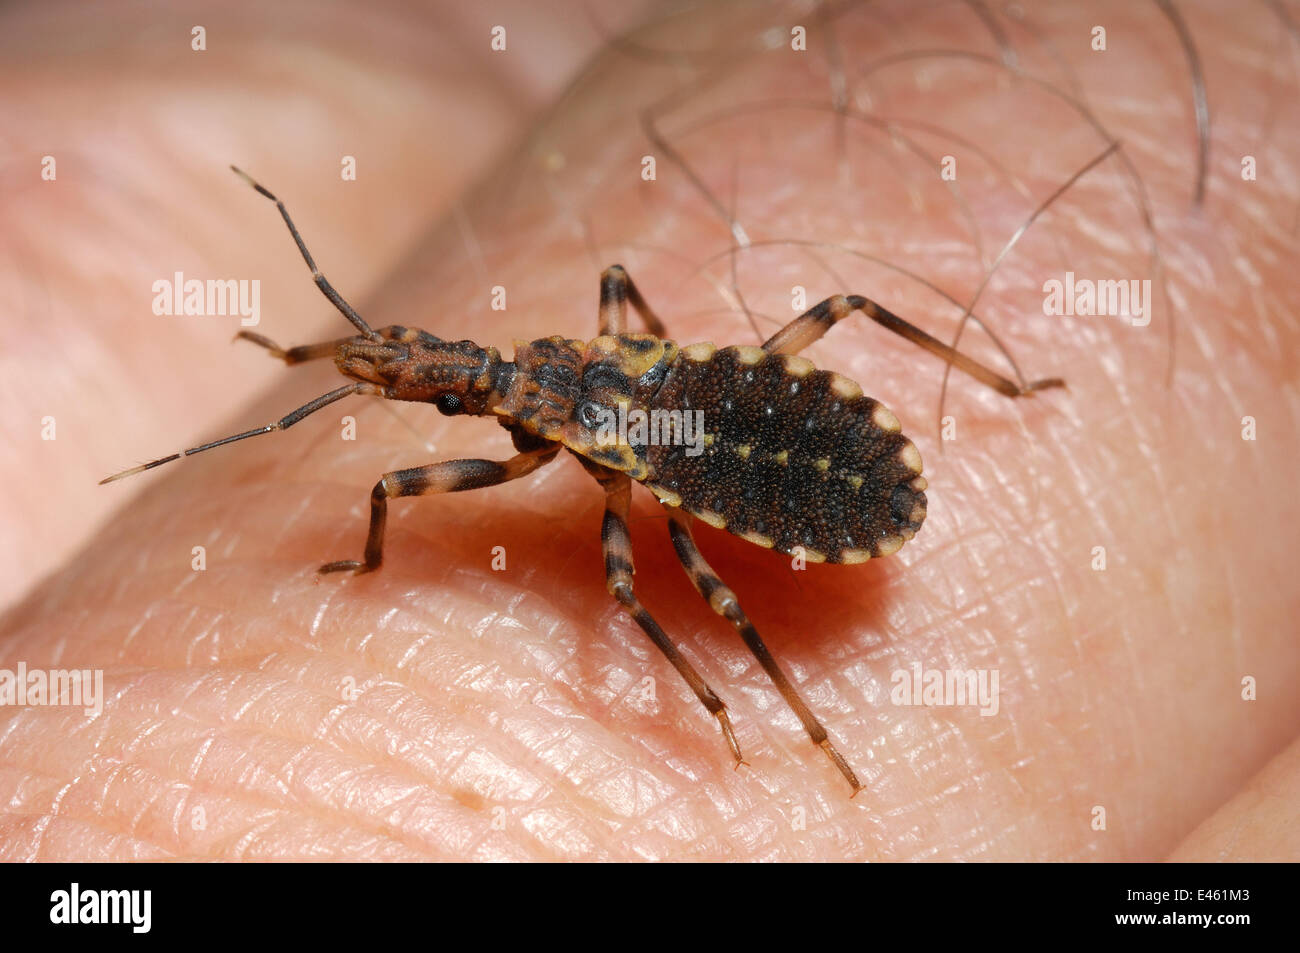 Vinchuca (Triatoma infestans) à pied à travers la peau humaine. Le bug est un convoyeur de sang, et le vecteur de la maladie de Chagas. Conditions contrôlées. La Bolivie, avril. Banque D'Images